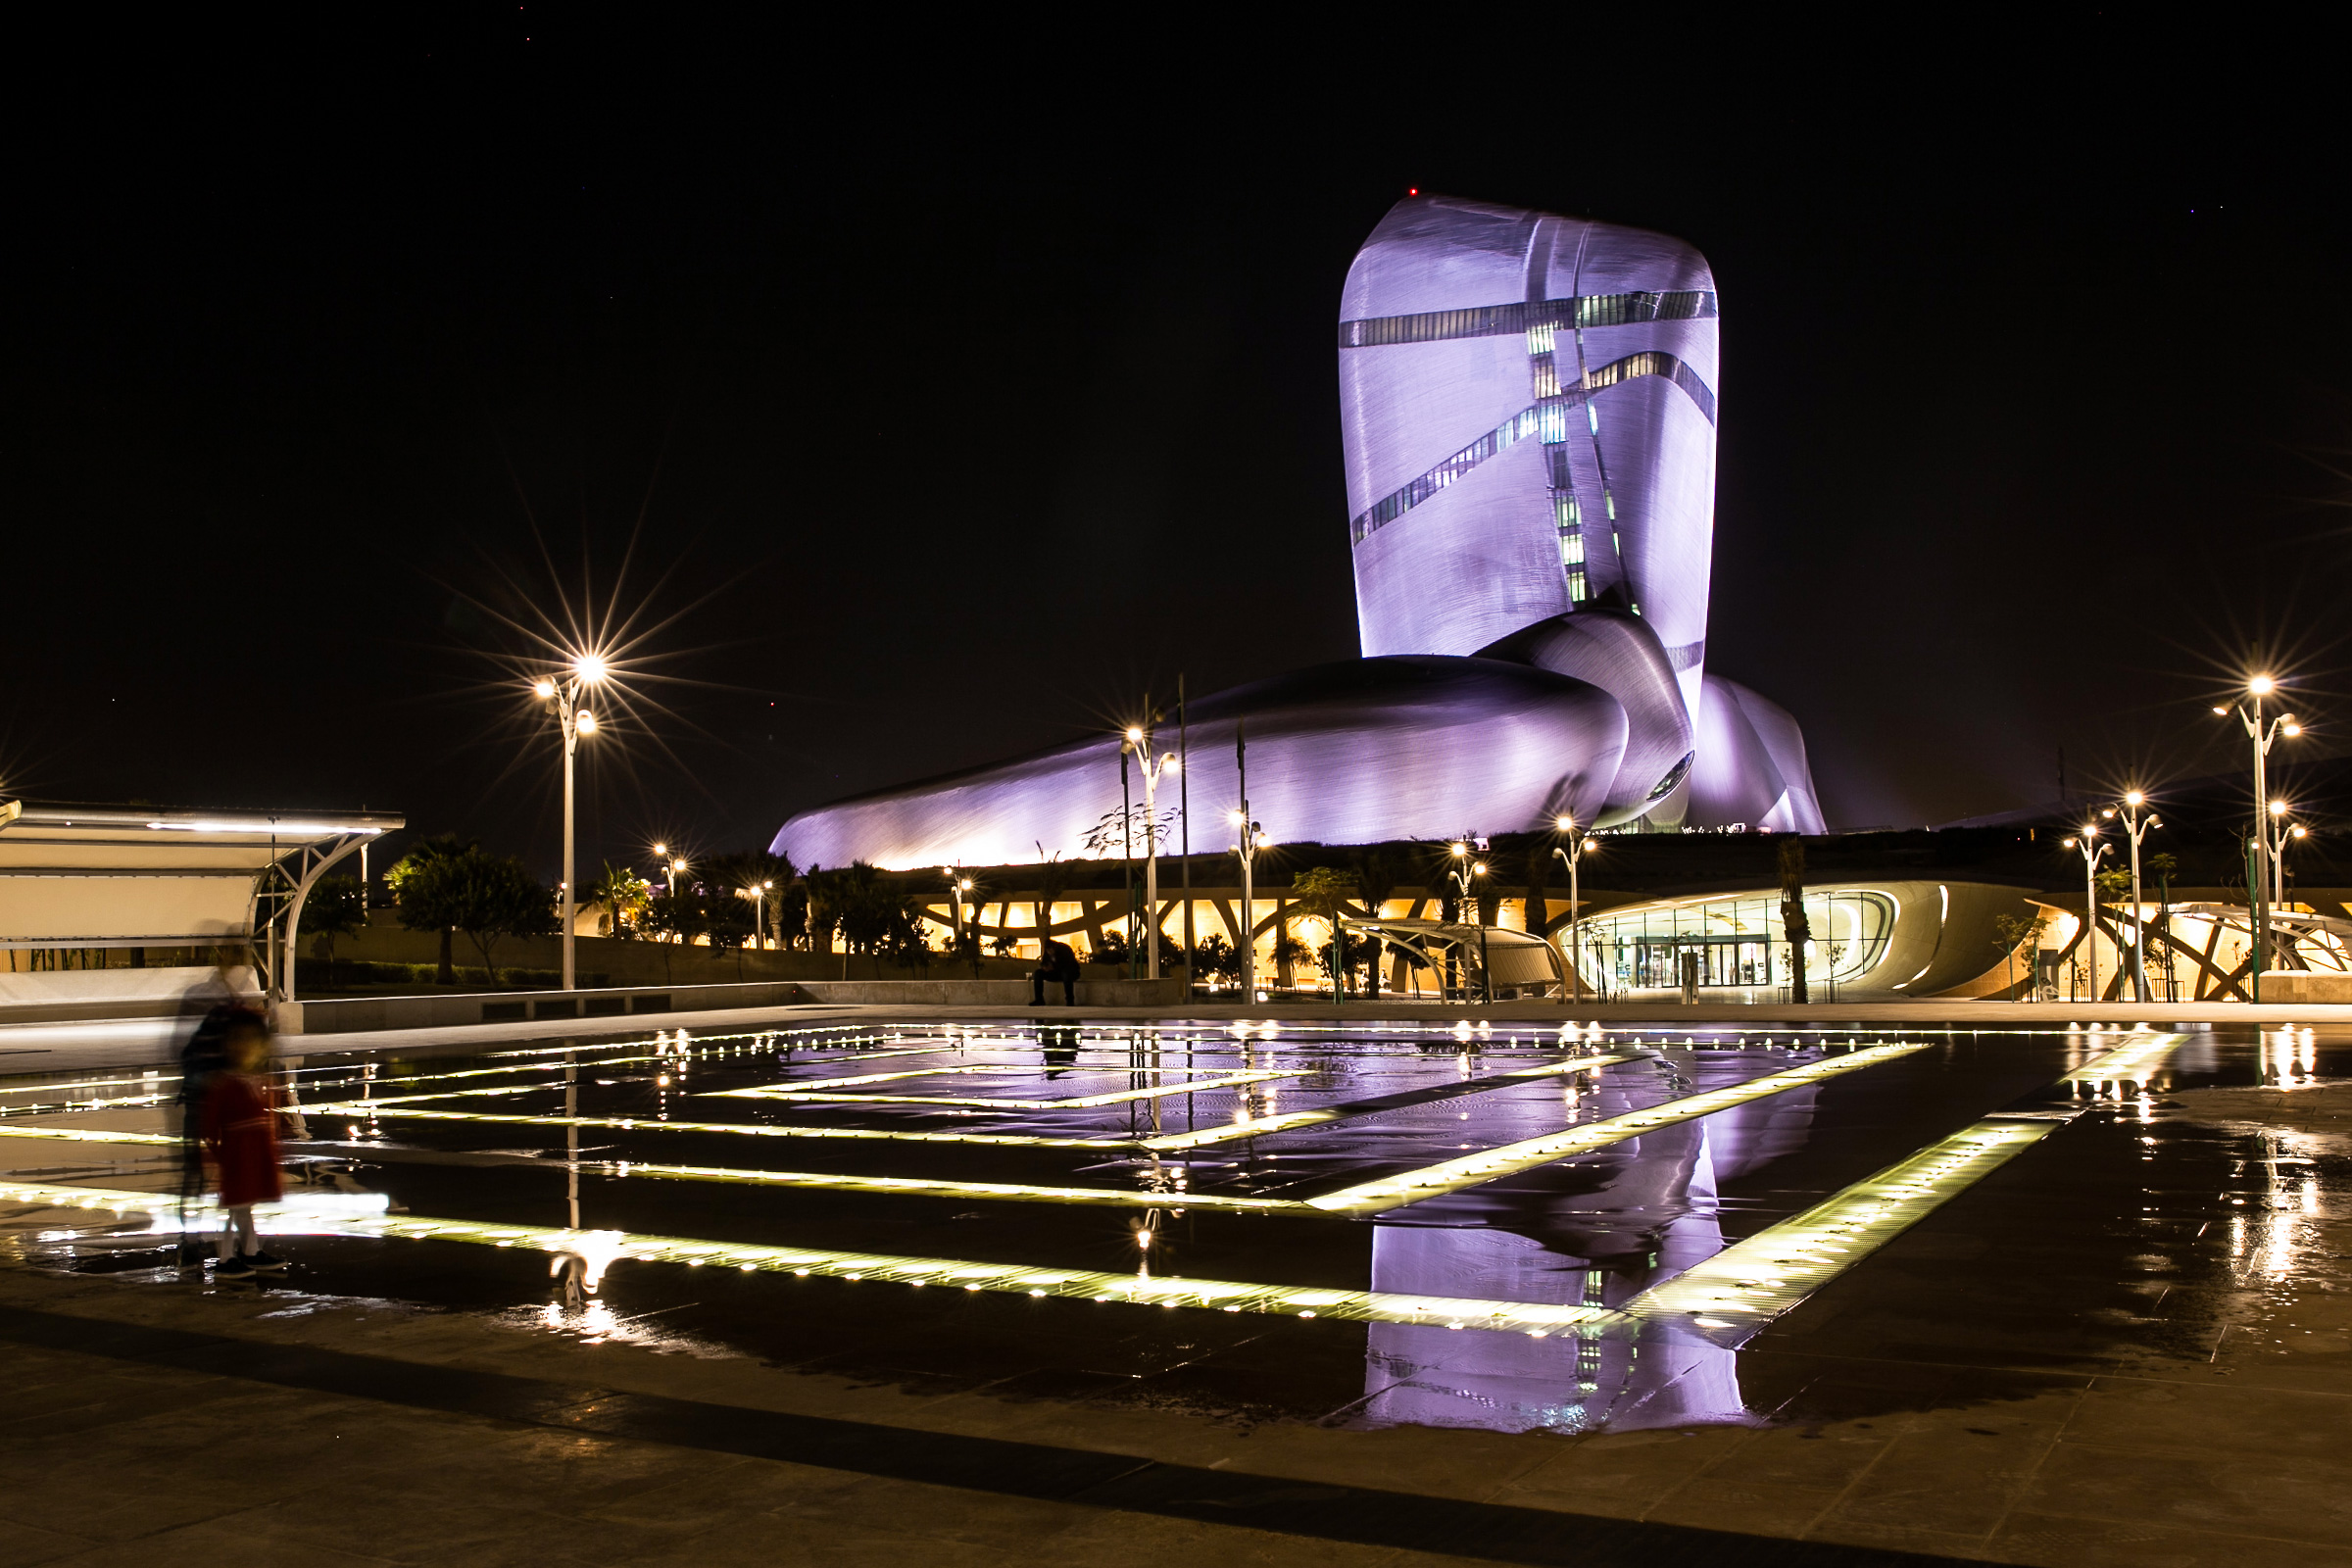 Парк построен по инициативе главной нефтяной компании Саудовской Аравии Saudi Aramco норвежским архитектурным бюро Sn&oslash;hetta. В 2008 году король Абдалла Абдул-Азиз Аль Сауд заложил первый камень в основание комплекса, который был открыт в июне 2018 года. На его территории расположены музей, выставочный зал, кинотеатр и библиотека, фонд которой насчитывает более 200 тыс. изданий
